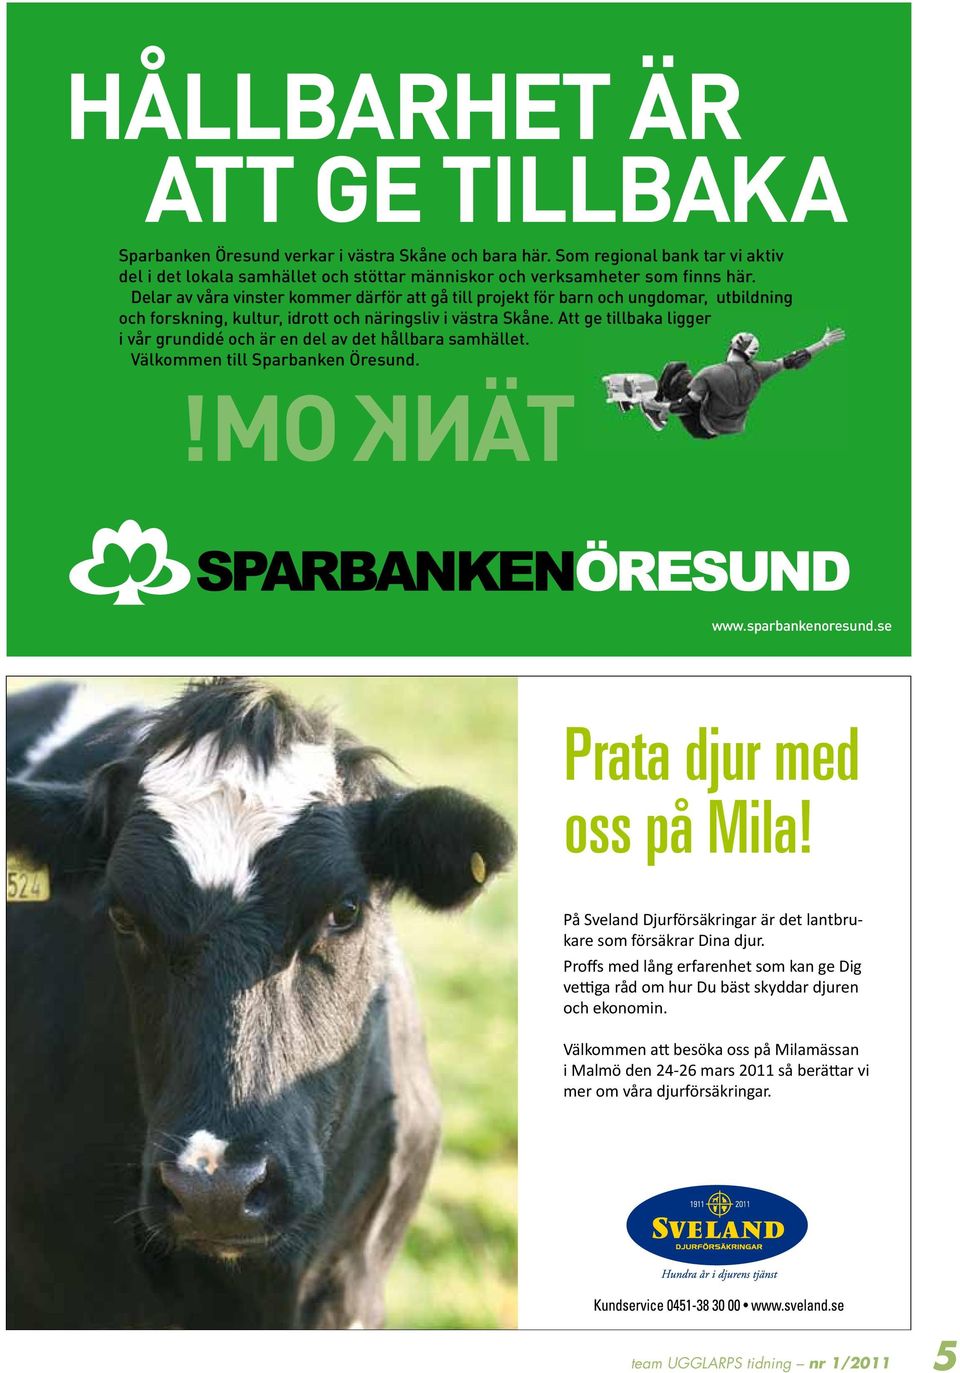 Att ge baka ligger i vår grundidé och är en del av det hållbara samhället. Välkommen Sparbanken Öresund. TÄNK OM! www.sparbankenoresund.se Prata djur med oss på Mila!